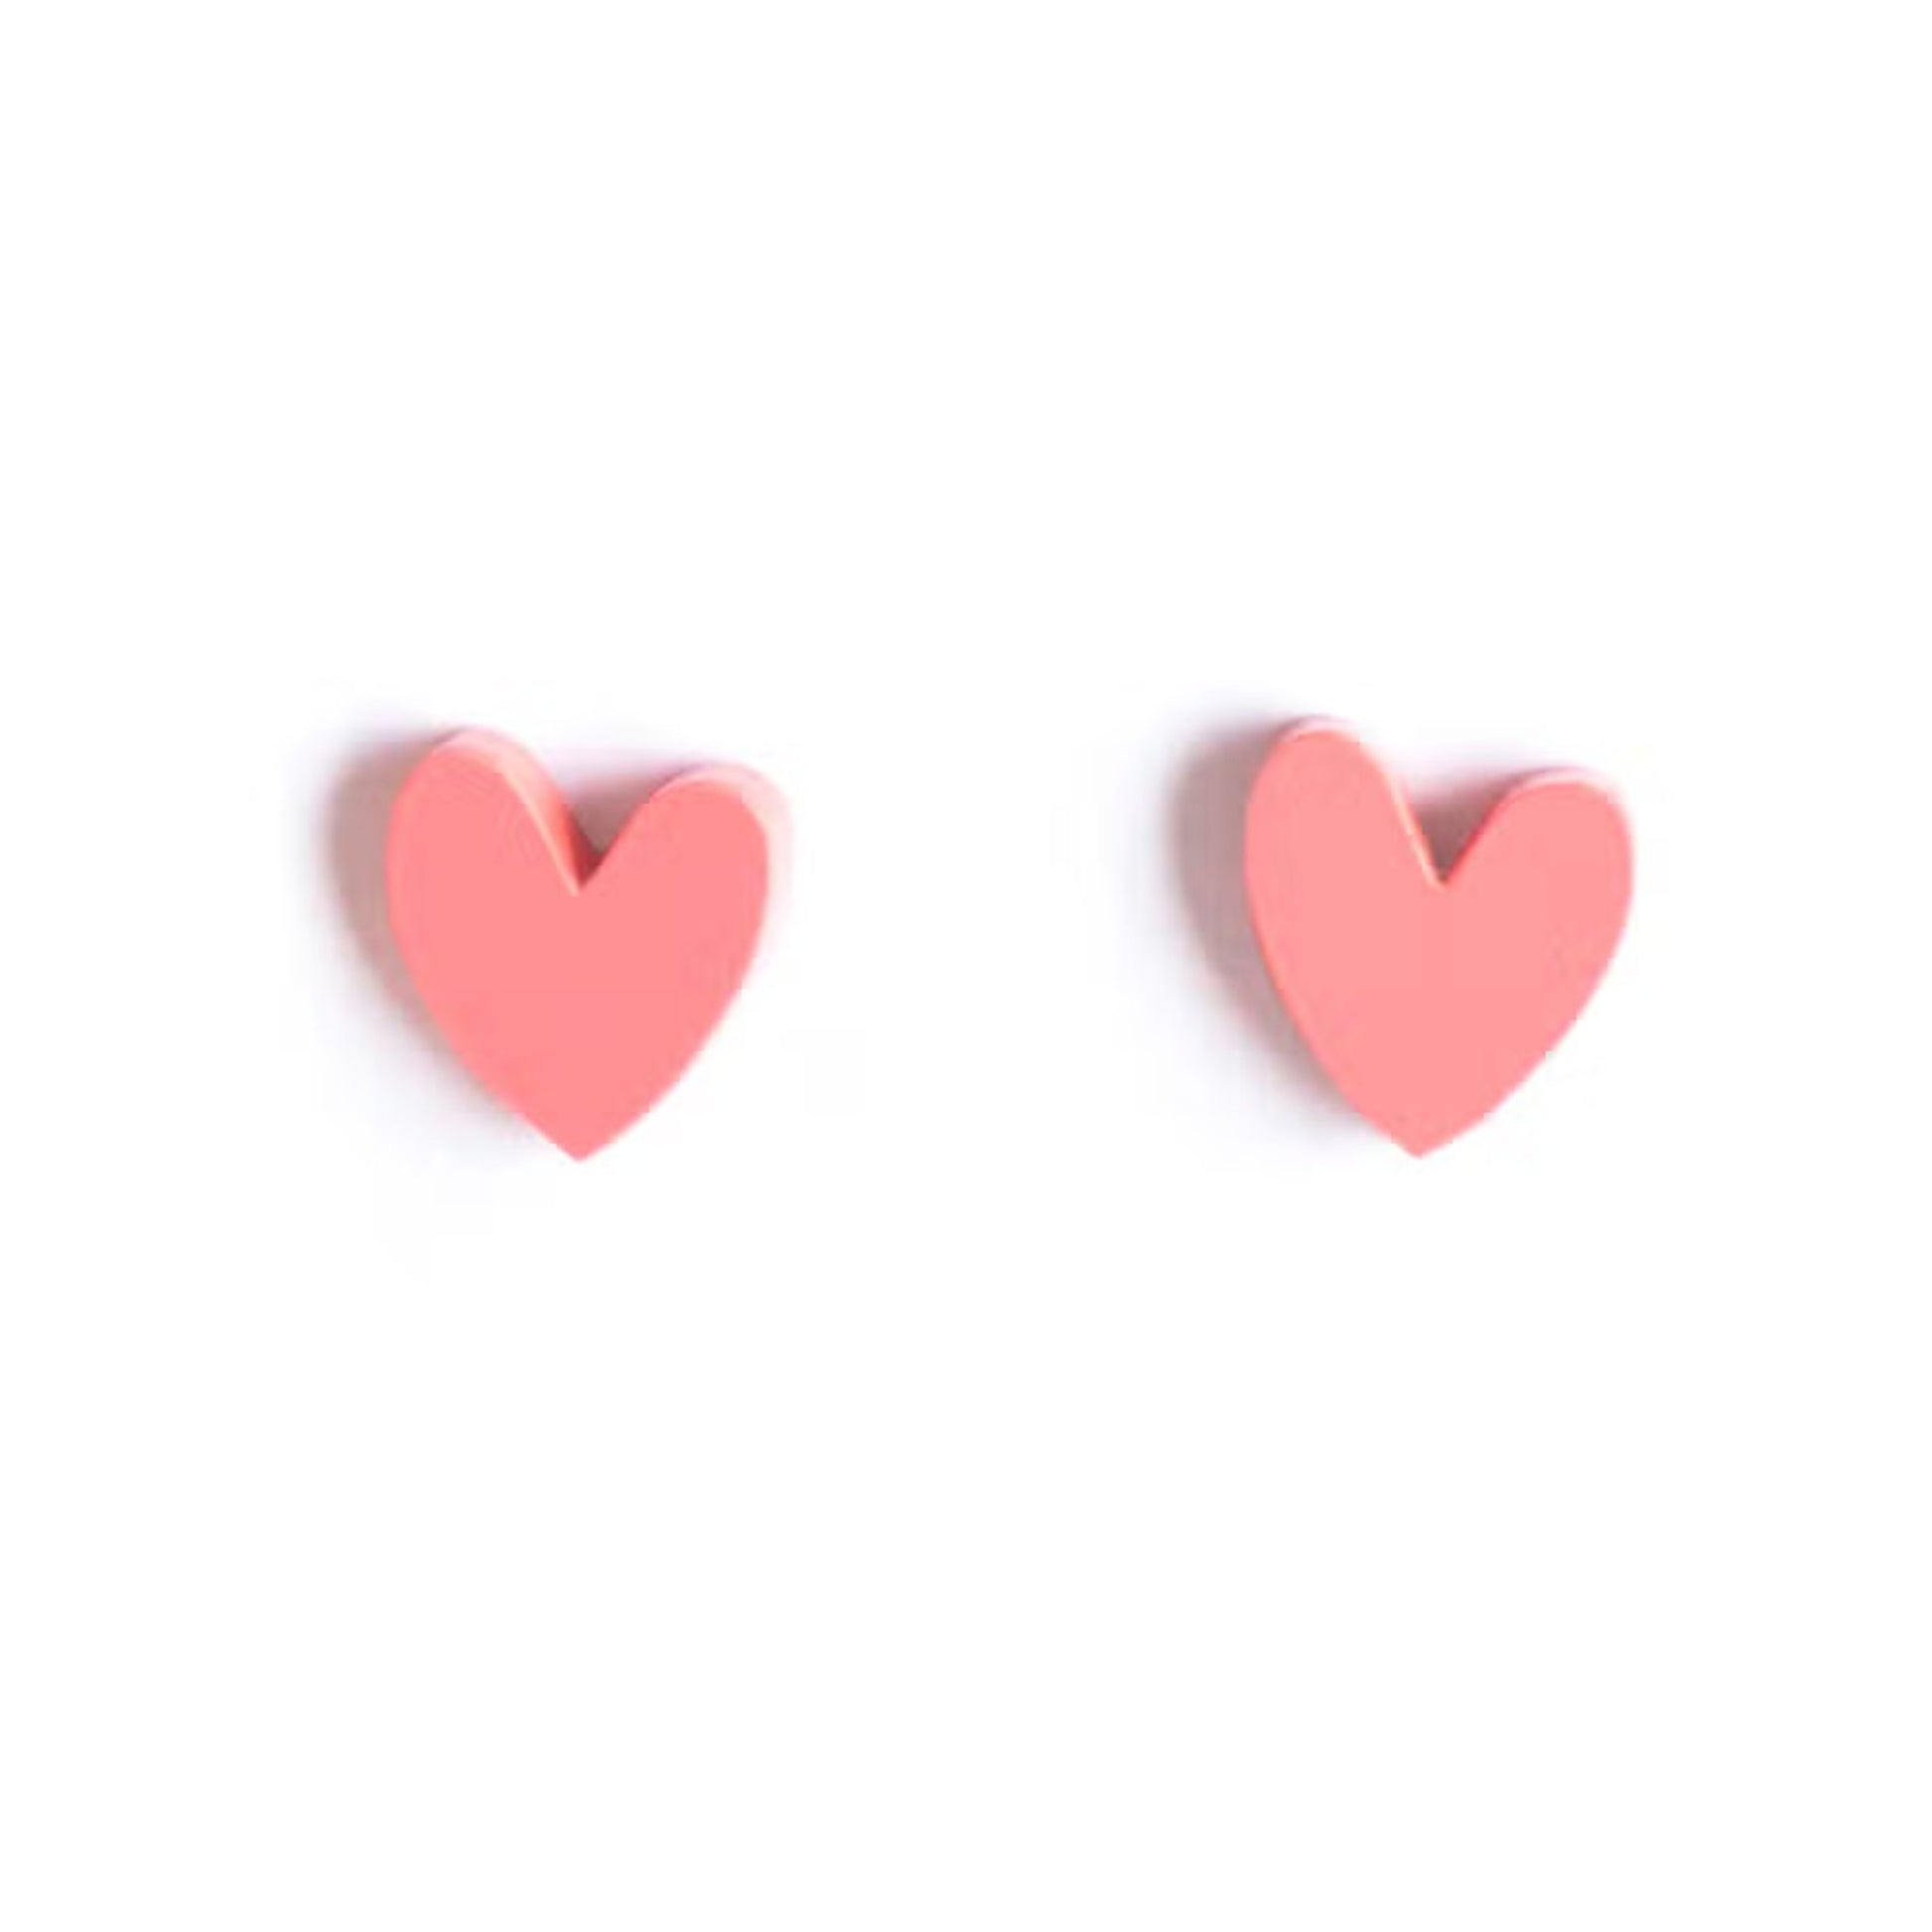 Heart Stud Earrings - Blush Pink - The Little Jewellery Company